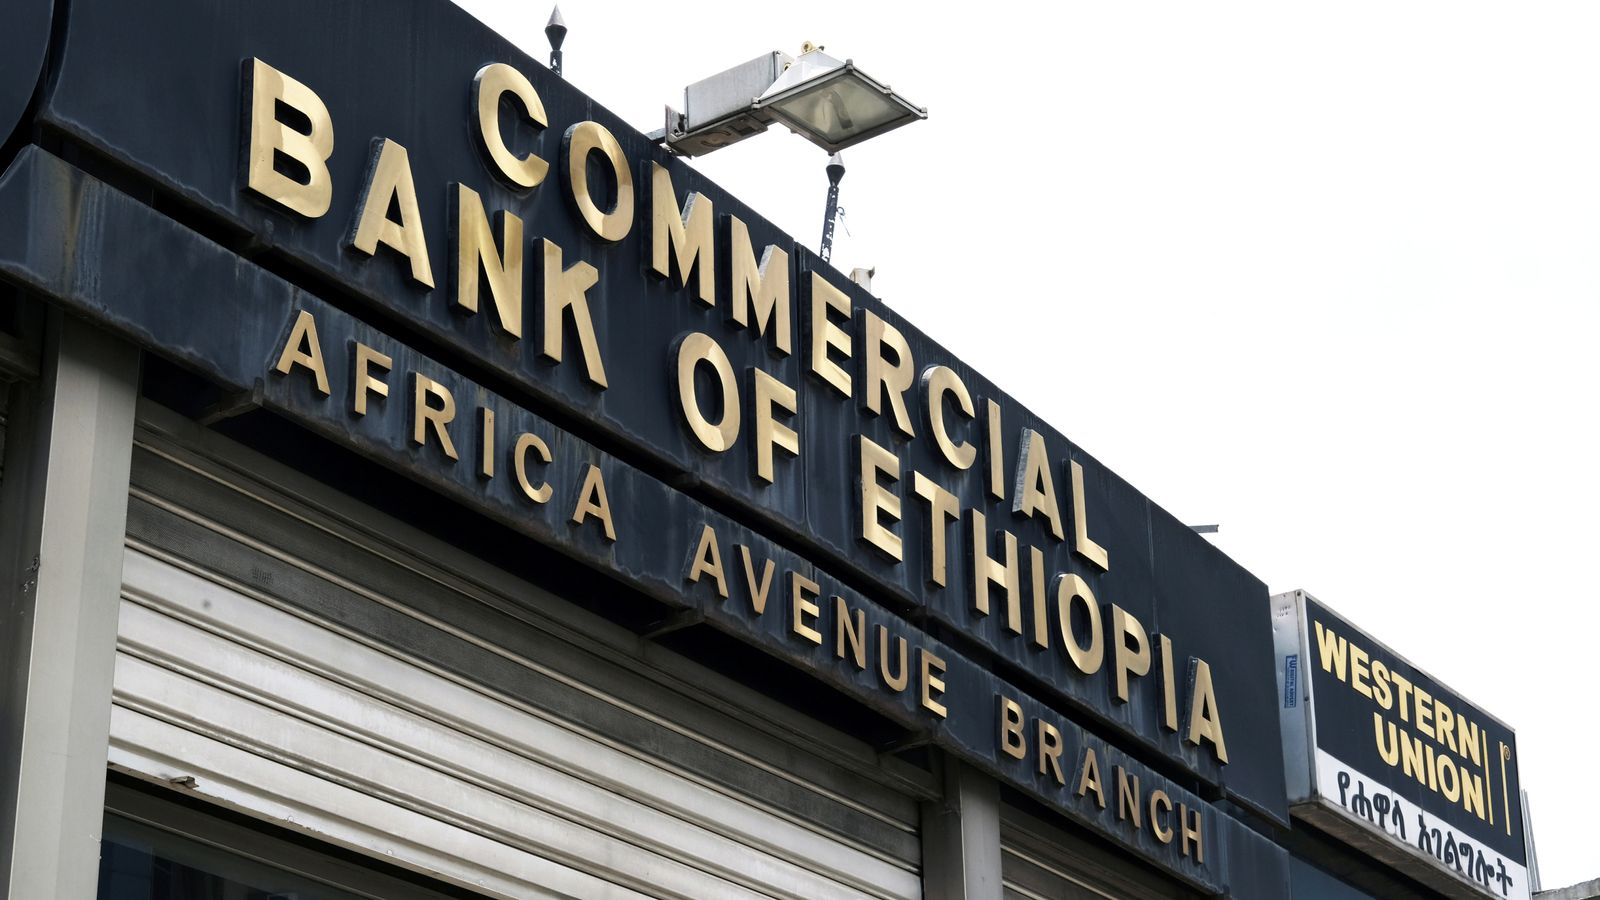 Una banca etiope cerca di recuperare milioni dopo che un problema tecnico ha portato a ingenti prelievi |  notizie dal mondo